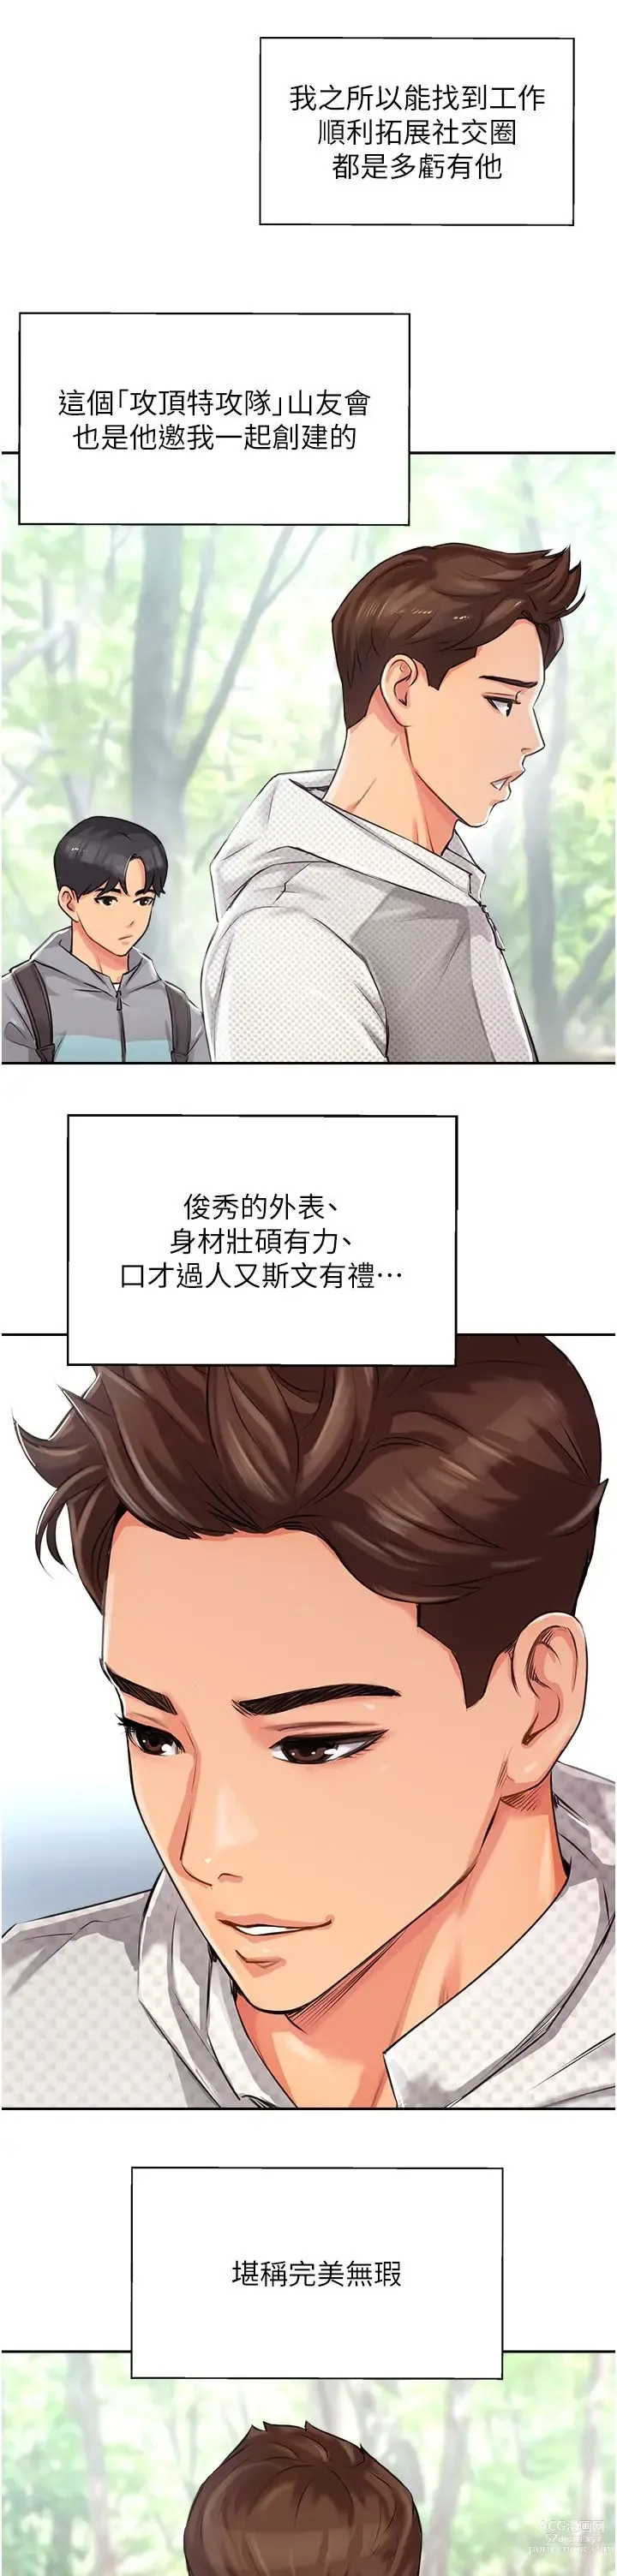 Page 15 of manga 攻顶传教士 1-31 中文无水印